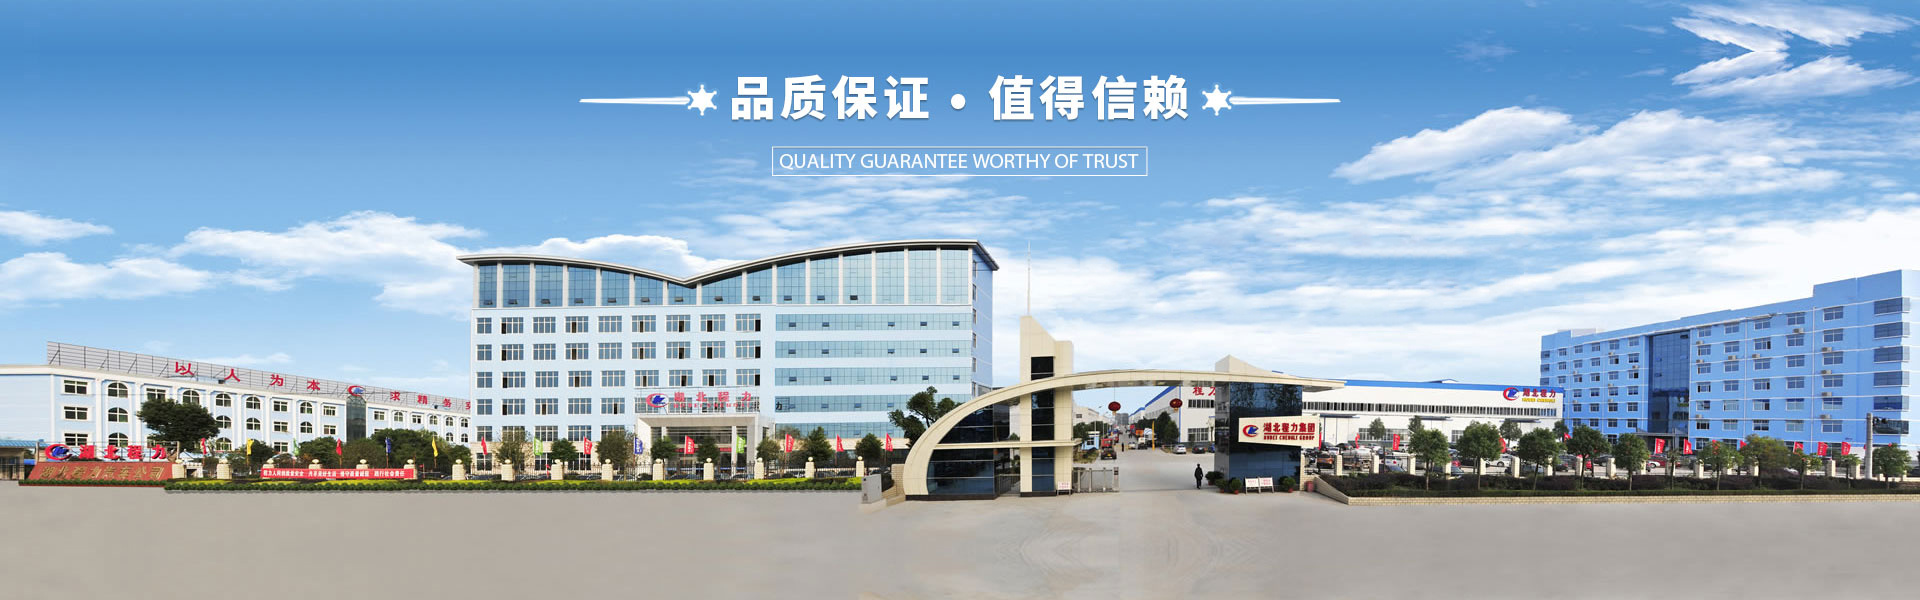 湖北省副省长周先旺率队视察程力汽车集团商用车产业园